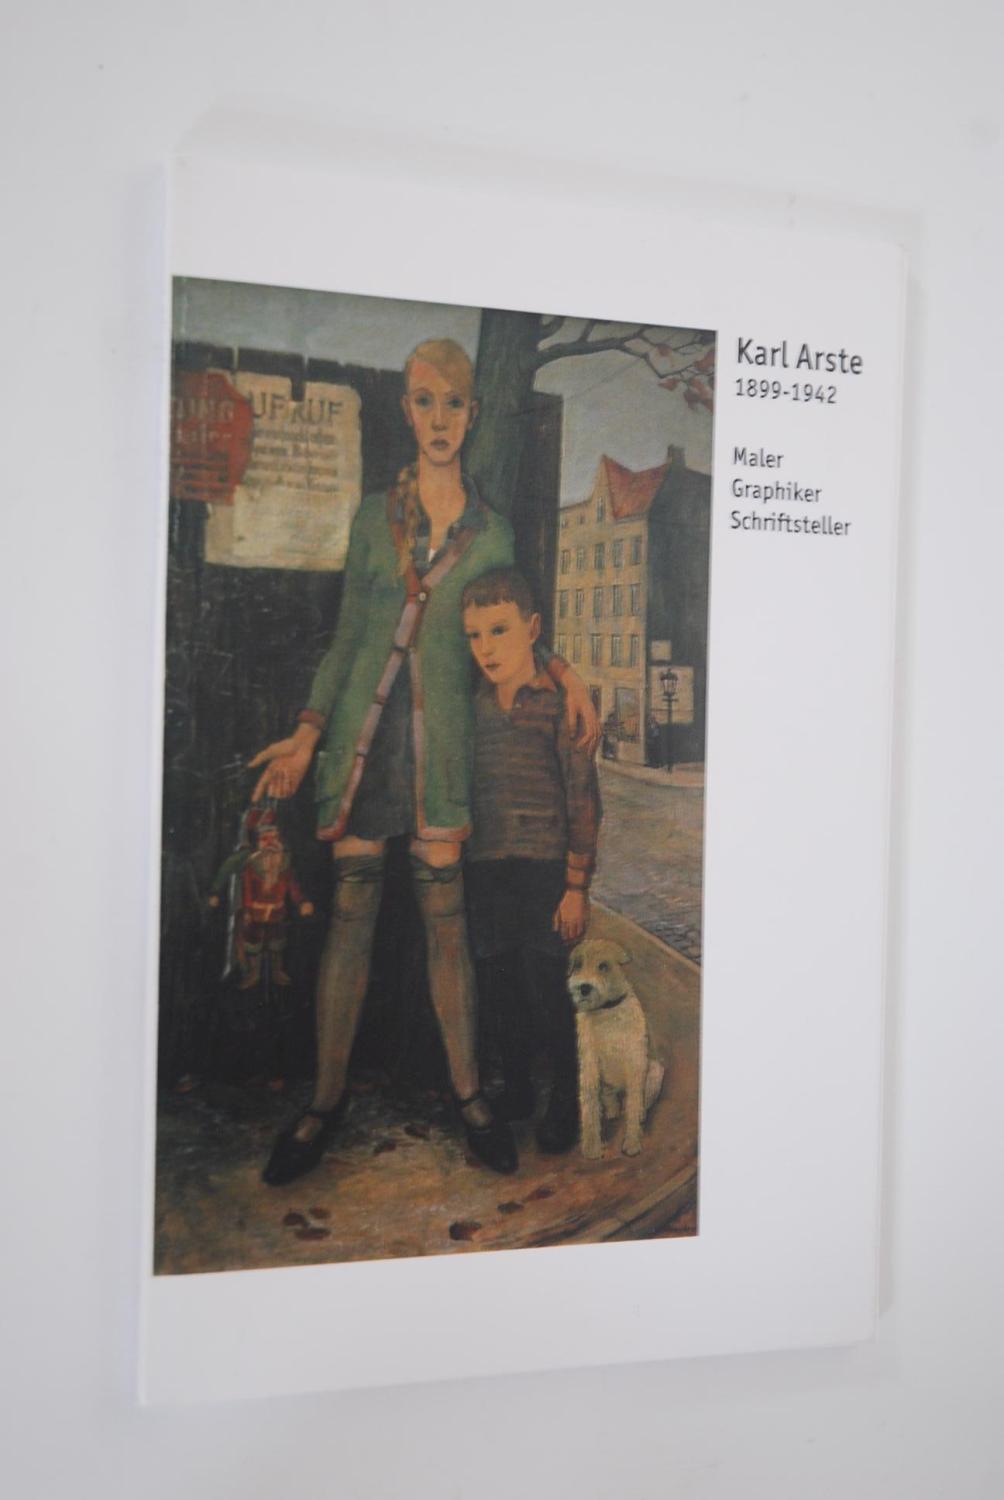 Karl Arste. 1899-1942, Porträt zum 100. Geburtstag des Worpsweder Malers, Graphikers und Schriftstellers. Ausstellung in der Worpsweder Kunsthalle 30.10.-28.11.99